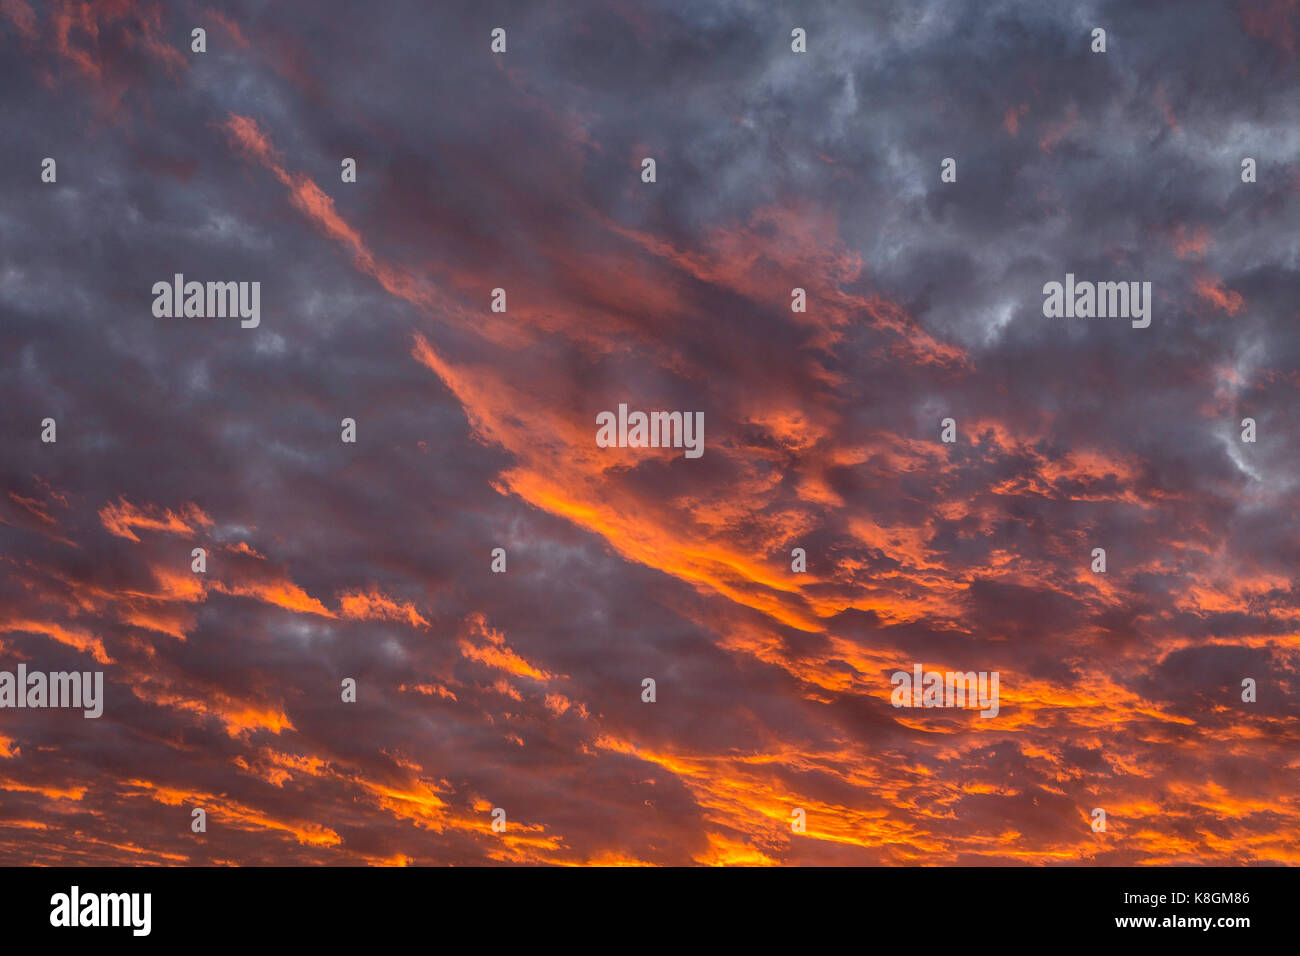 Dramatique nuages au coucher du soleil rougeoyant Banque D'Images